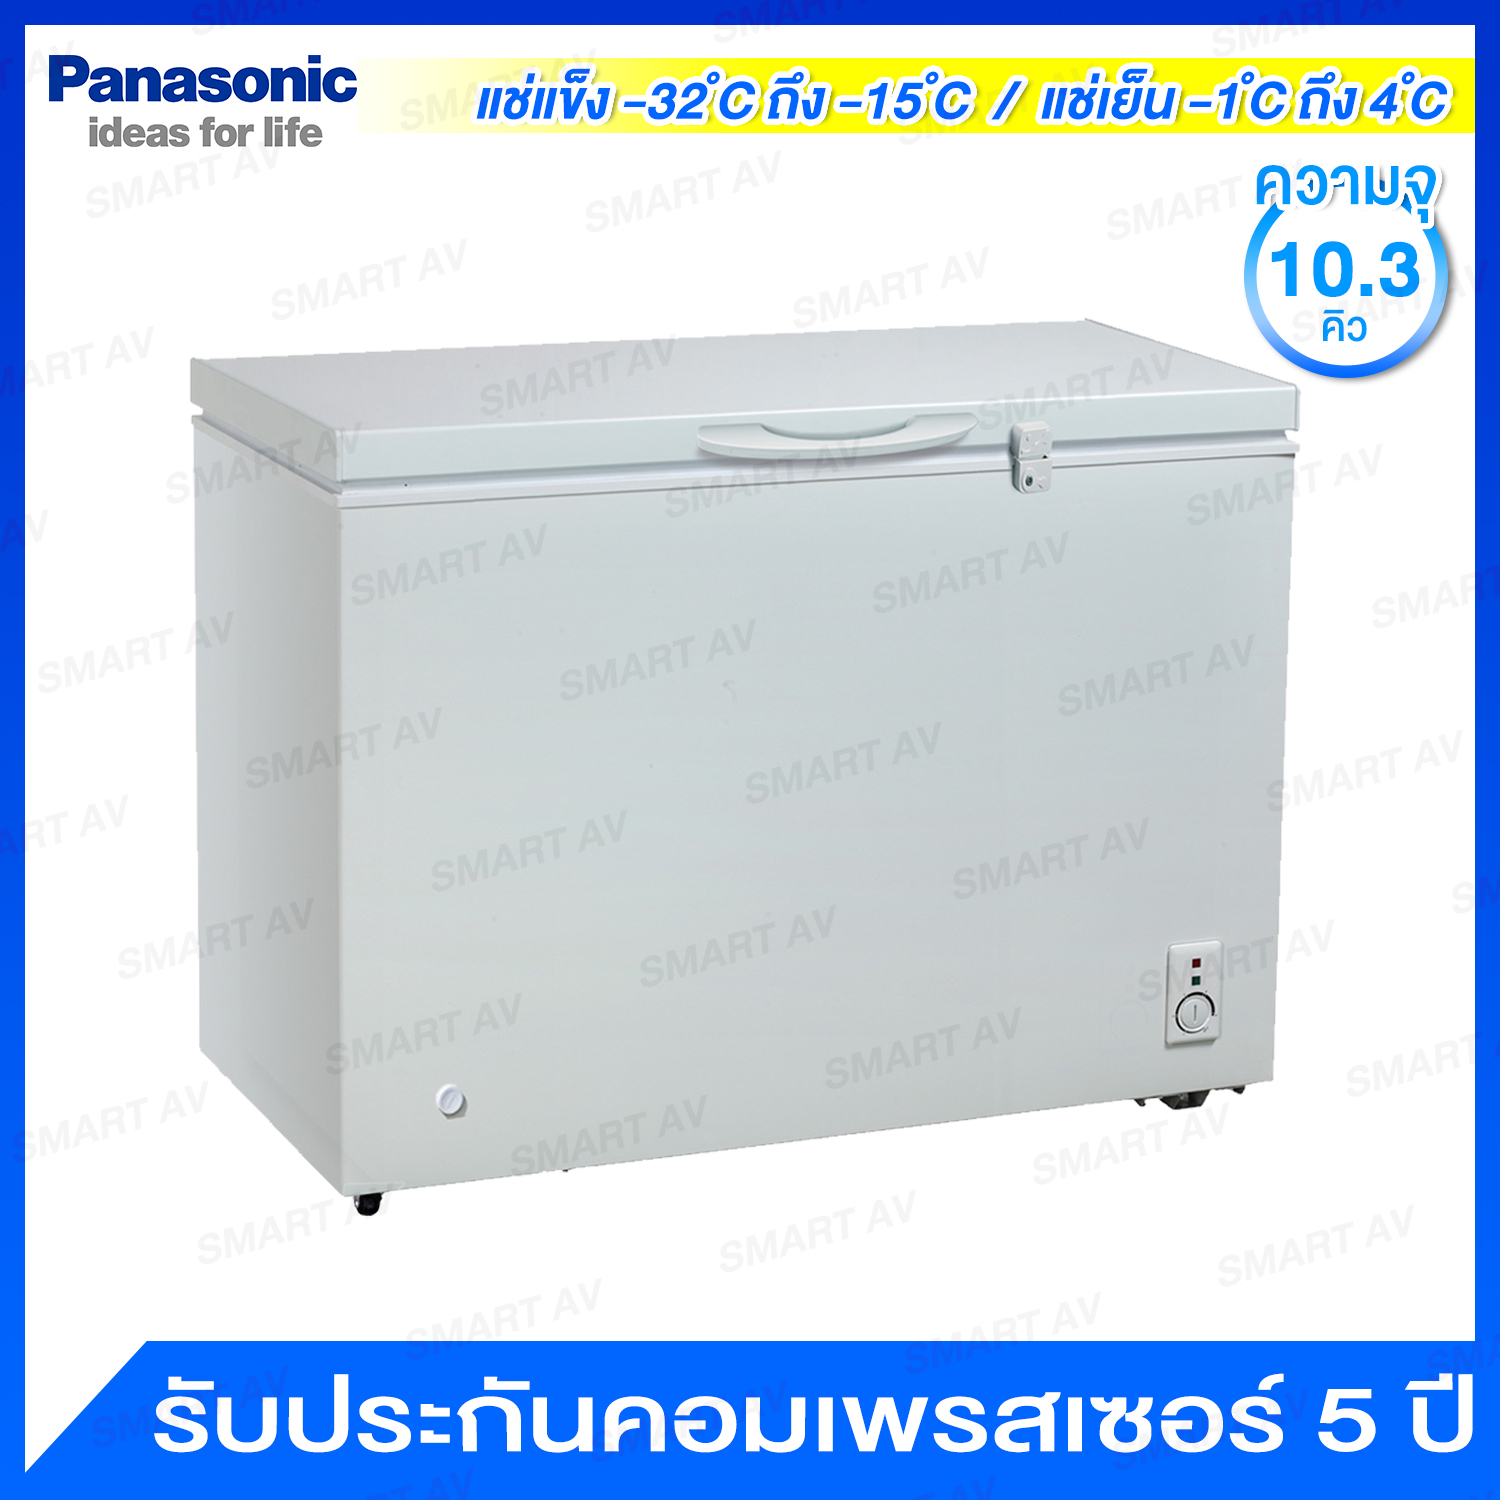 ขาย Panasonic ตู้แช่แบบ 2 ระบบ (แช่เย็น และแช่แข็ง) ความจุ 10.3 คิว (292 ลิตร) มีกุญแจล็อค และล้อเลื่อน รุ่น SCR-MFR300H2